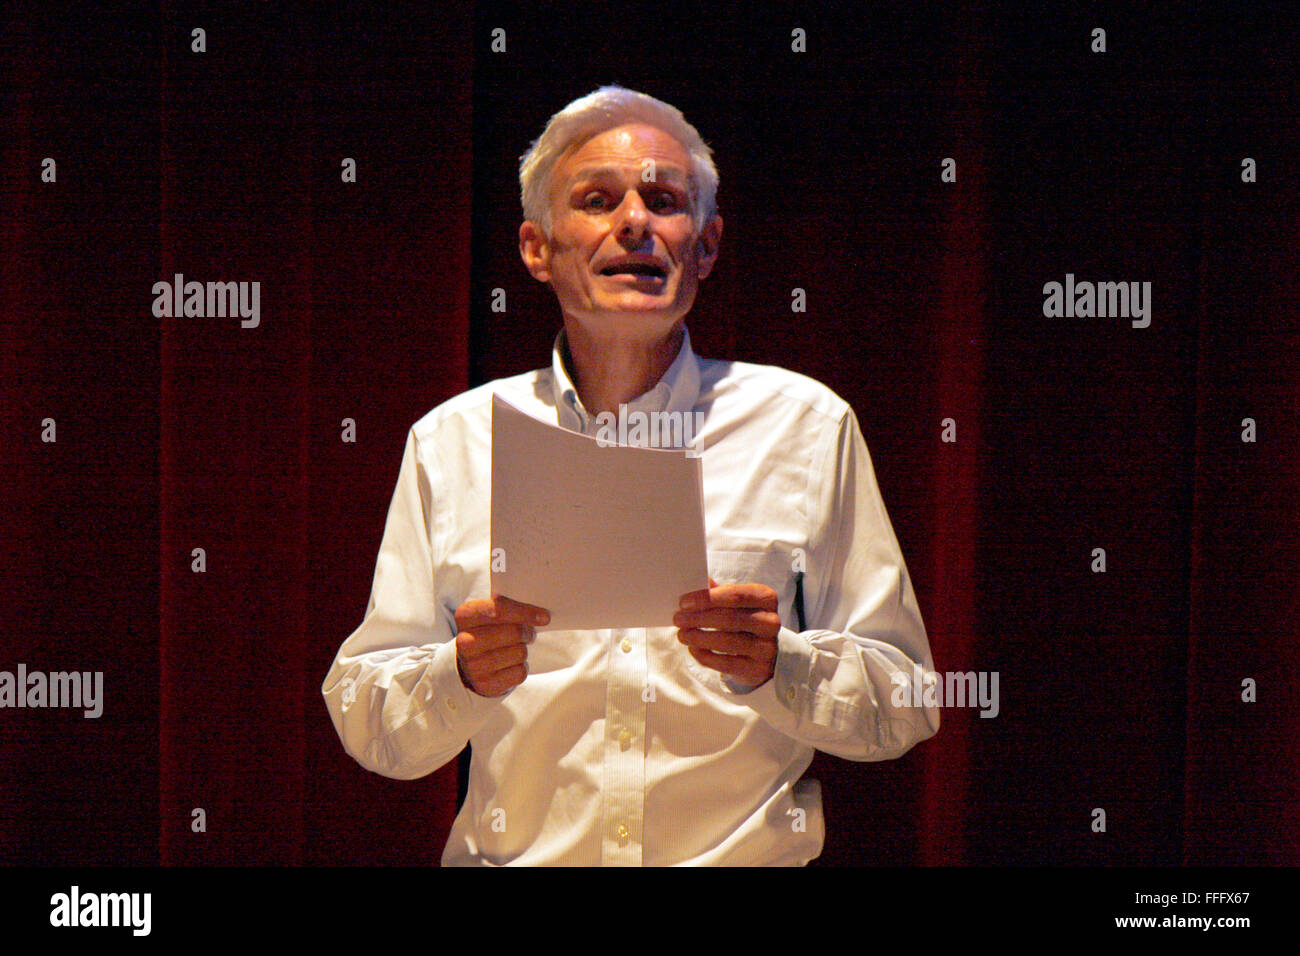 Rainald Goetz - Lesung seines neuen Romans 'Johann Holtrop', Deutsches Theater, 26. September 2012, Berlin. Stock Photo